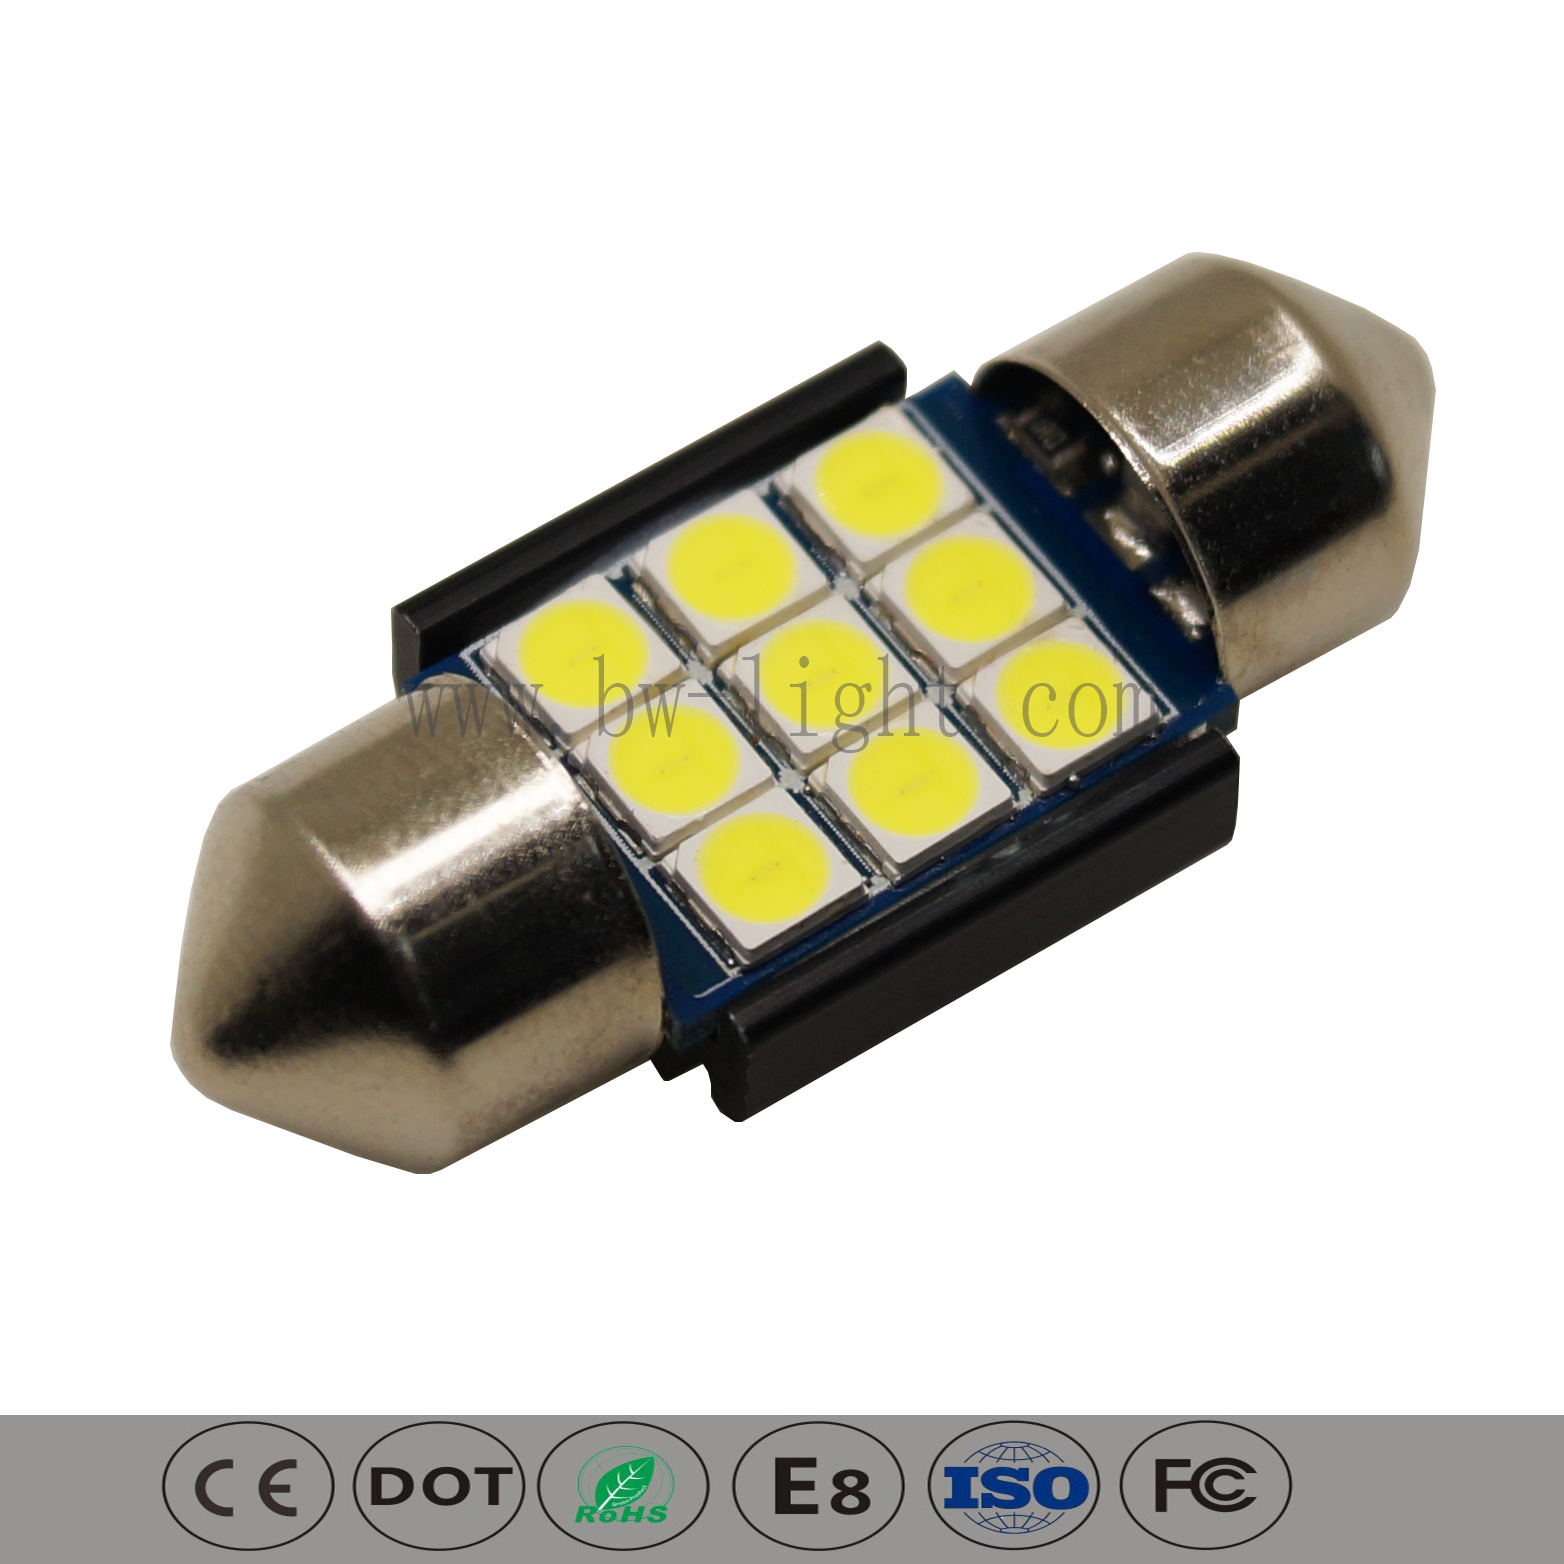 31 mm super hellhelles LED -Kuppelbirnen -Lampen -Leuchten 